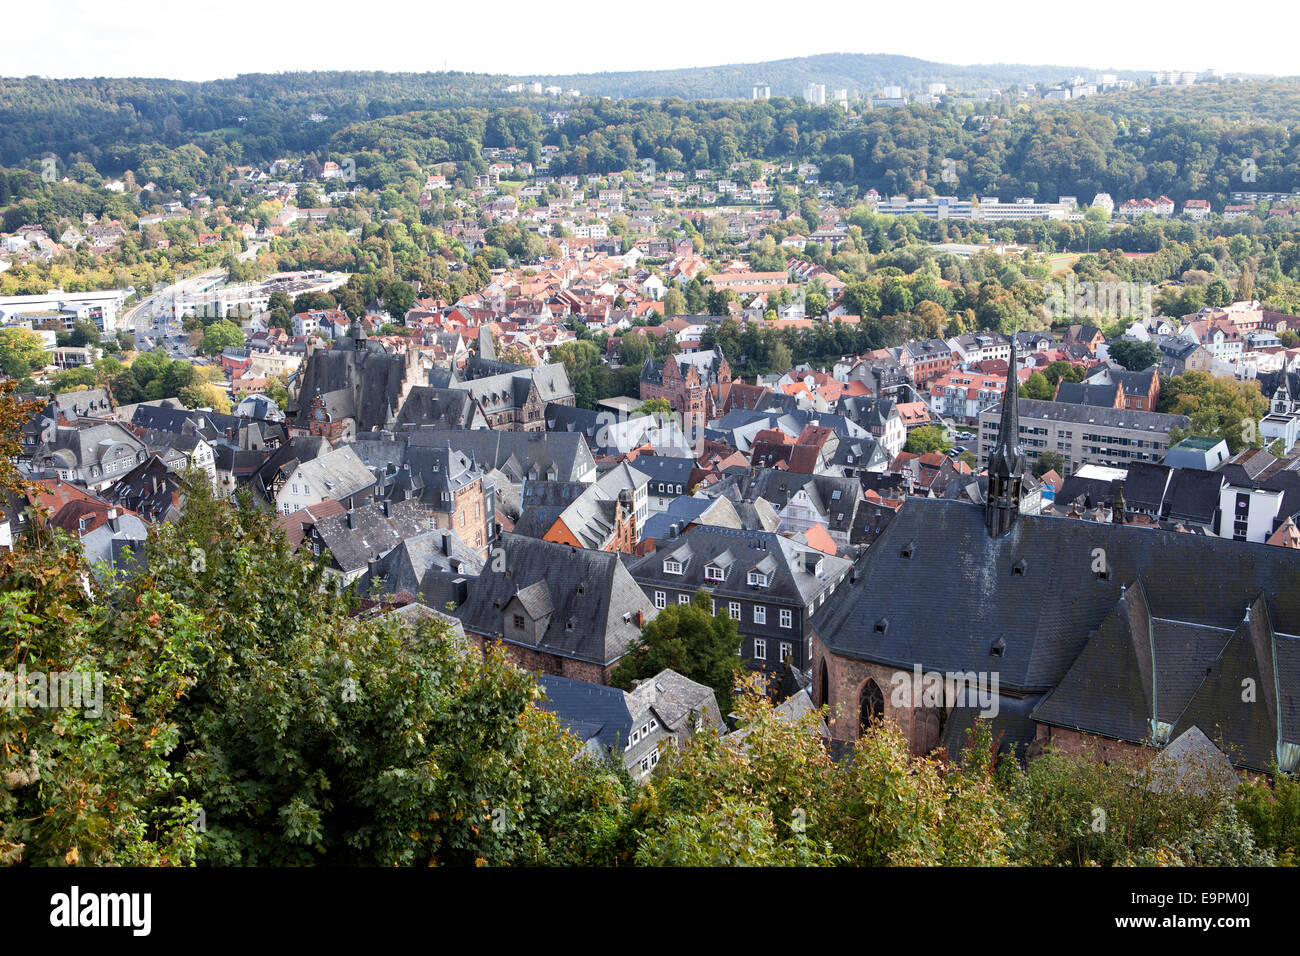 Con vistas a los tejados del centro histórico, Marburgo, Hesse, Alemania, Europa Foto de stock